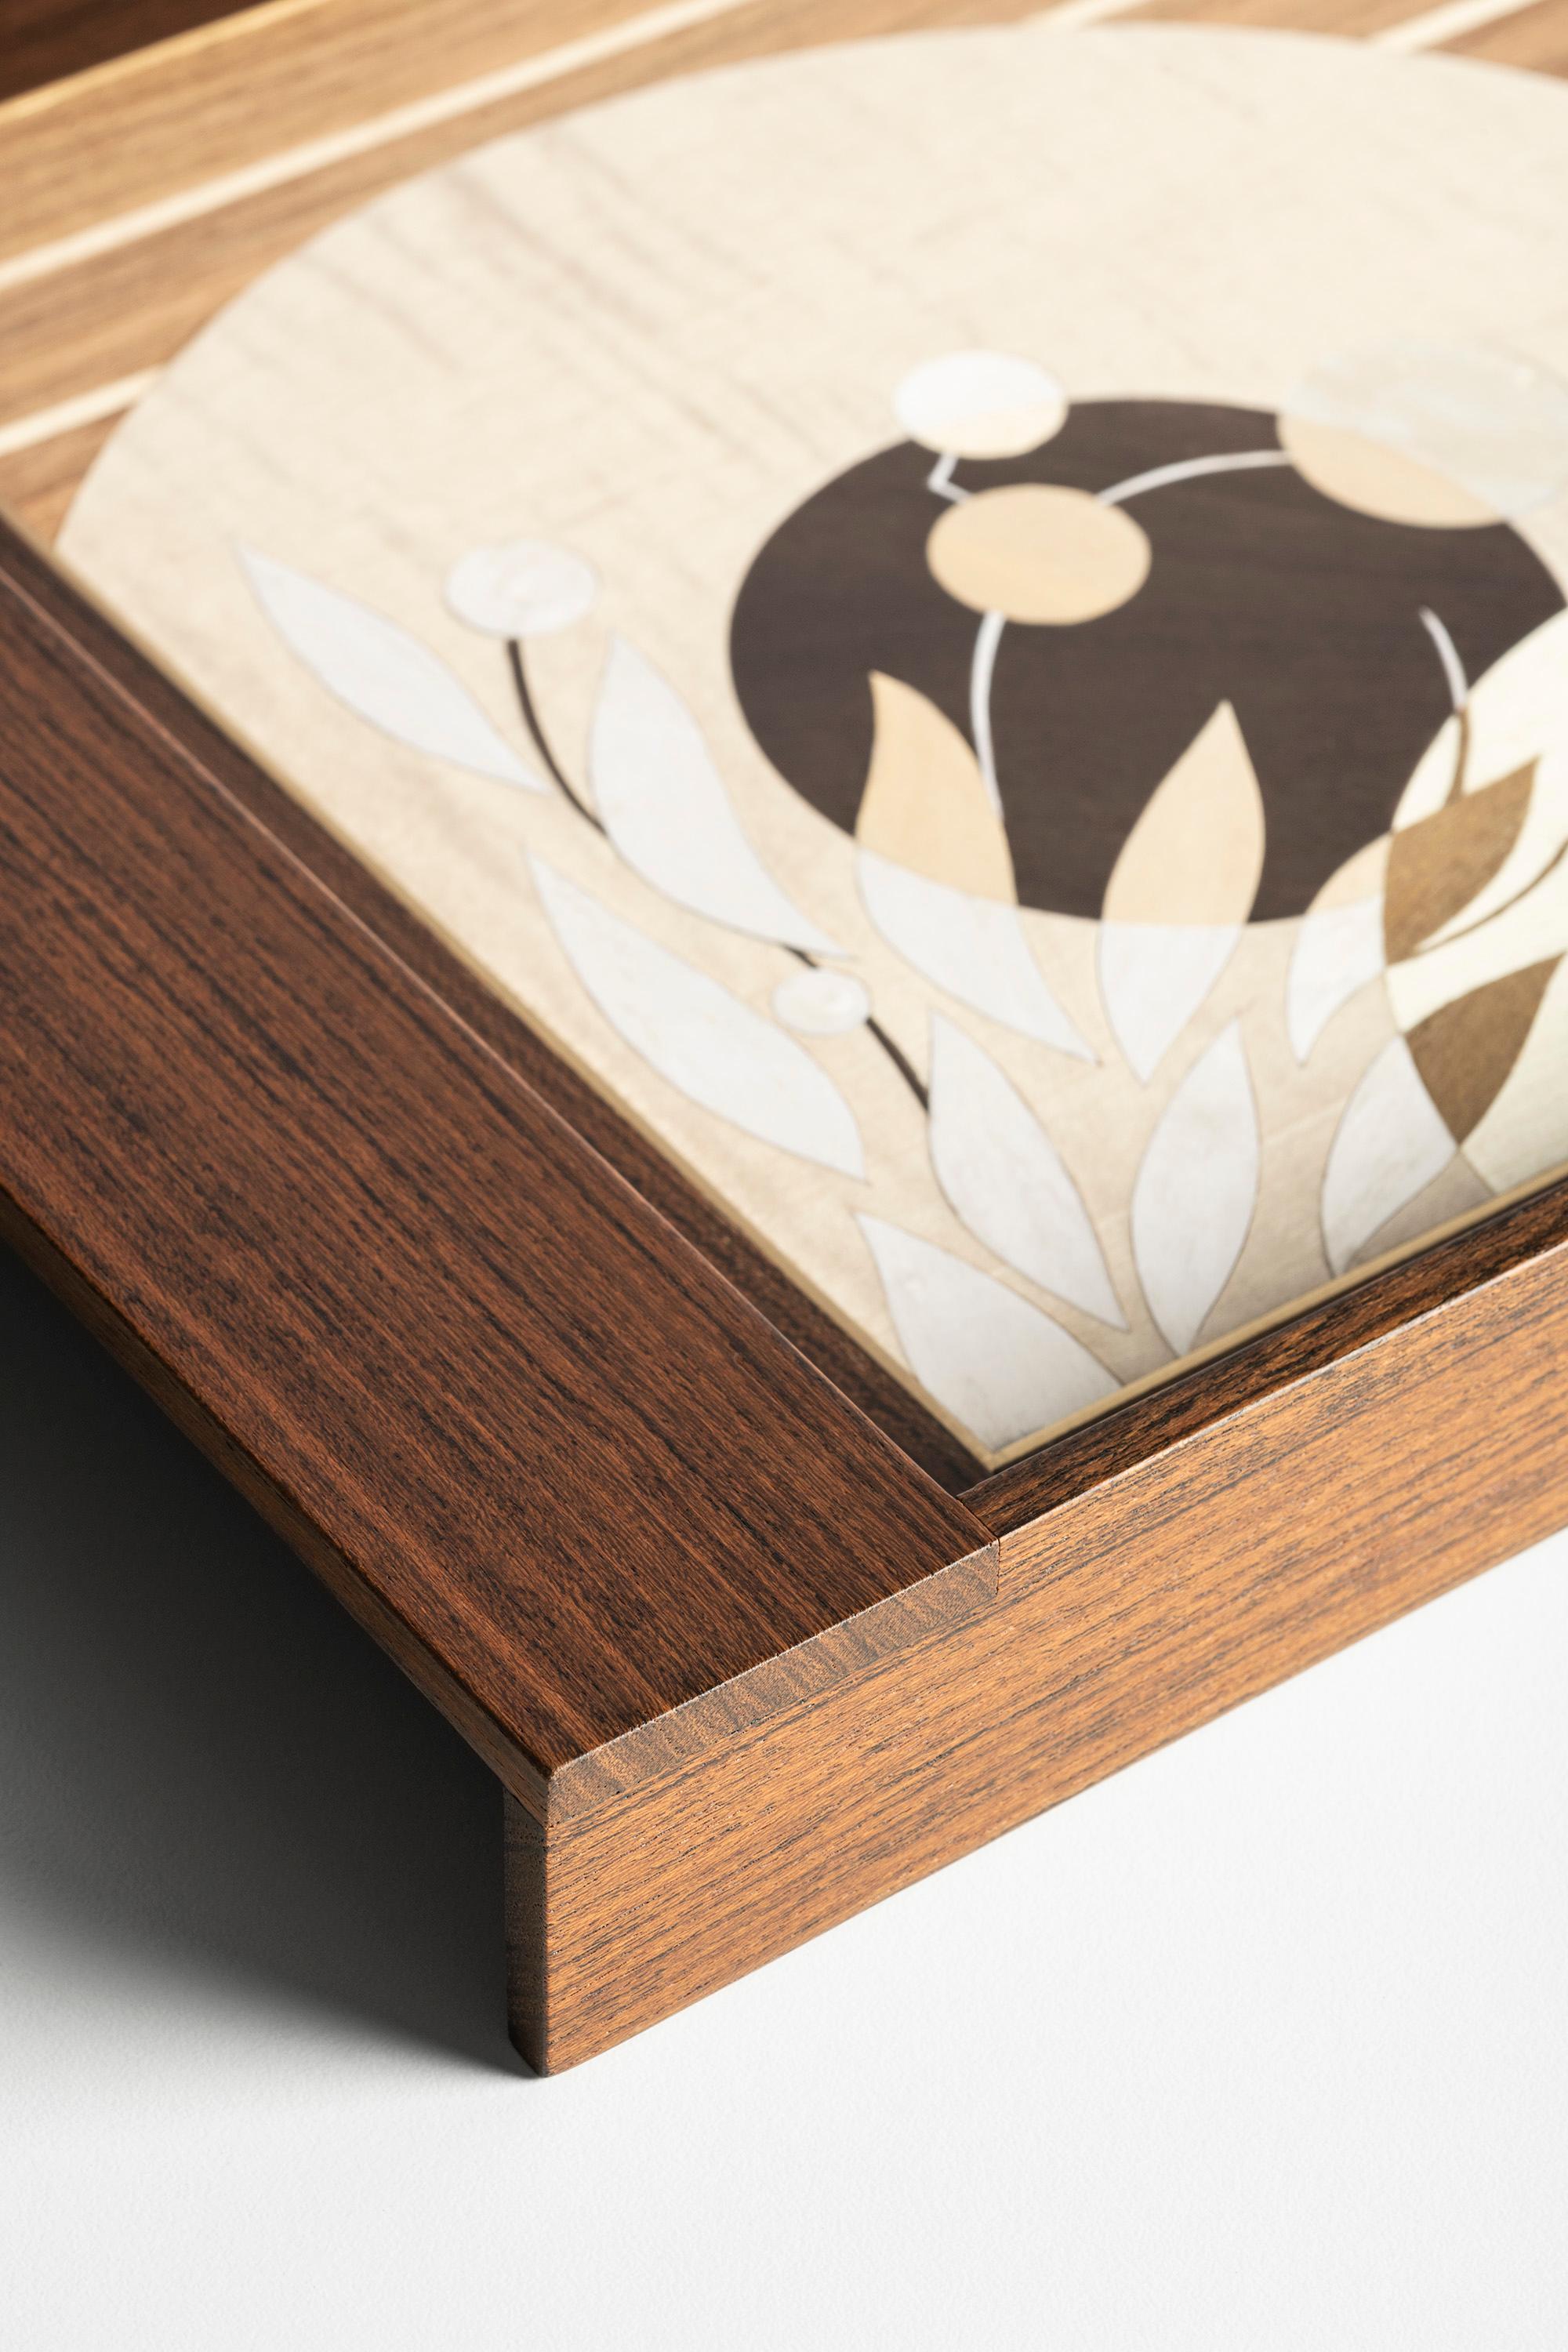 Une délicate incrustation d'inspiration japonaise décore ce plateau minimaliste. Les différents types de bois créent un contraste élégant de couleurs et de grain. Talea est un objet précieux fabriqué à la main qui combine l'art ancien de la